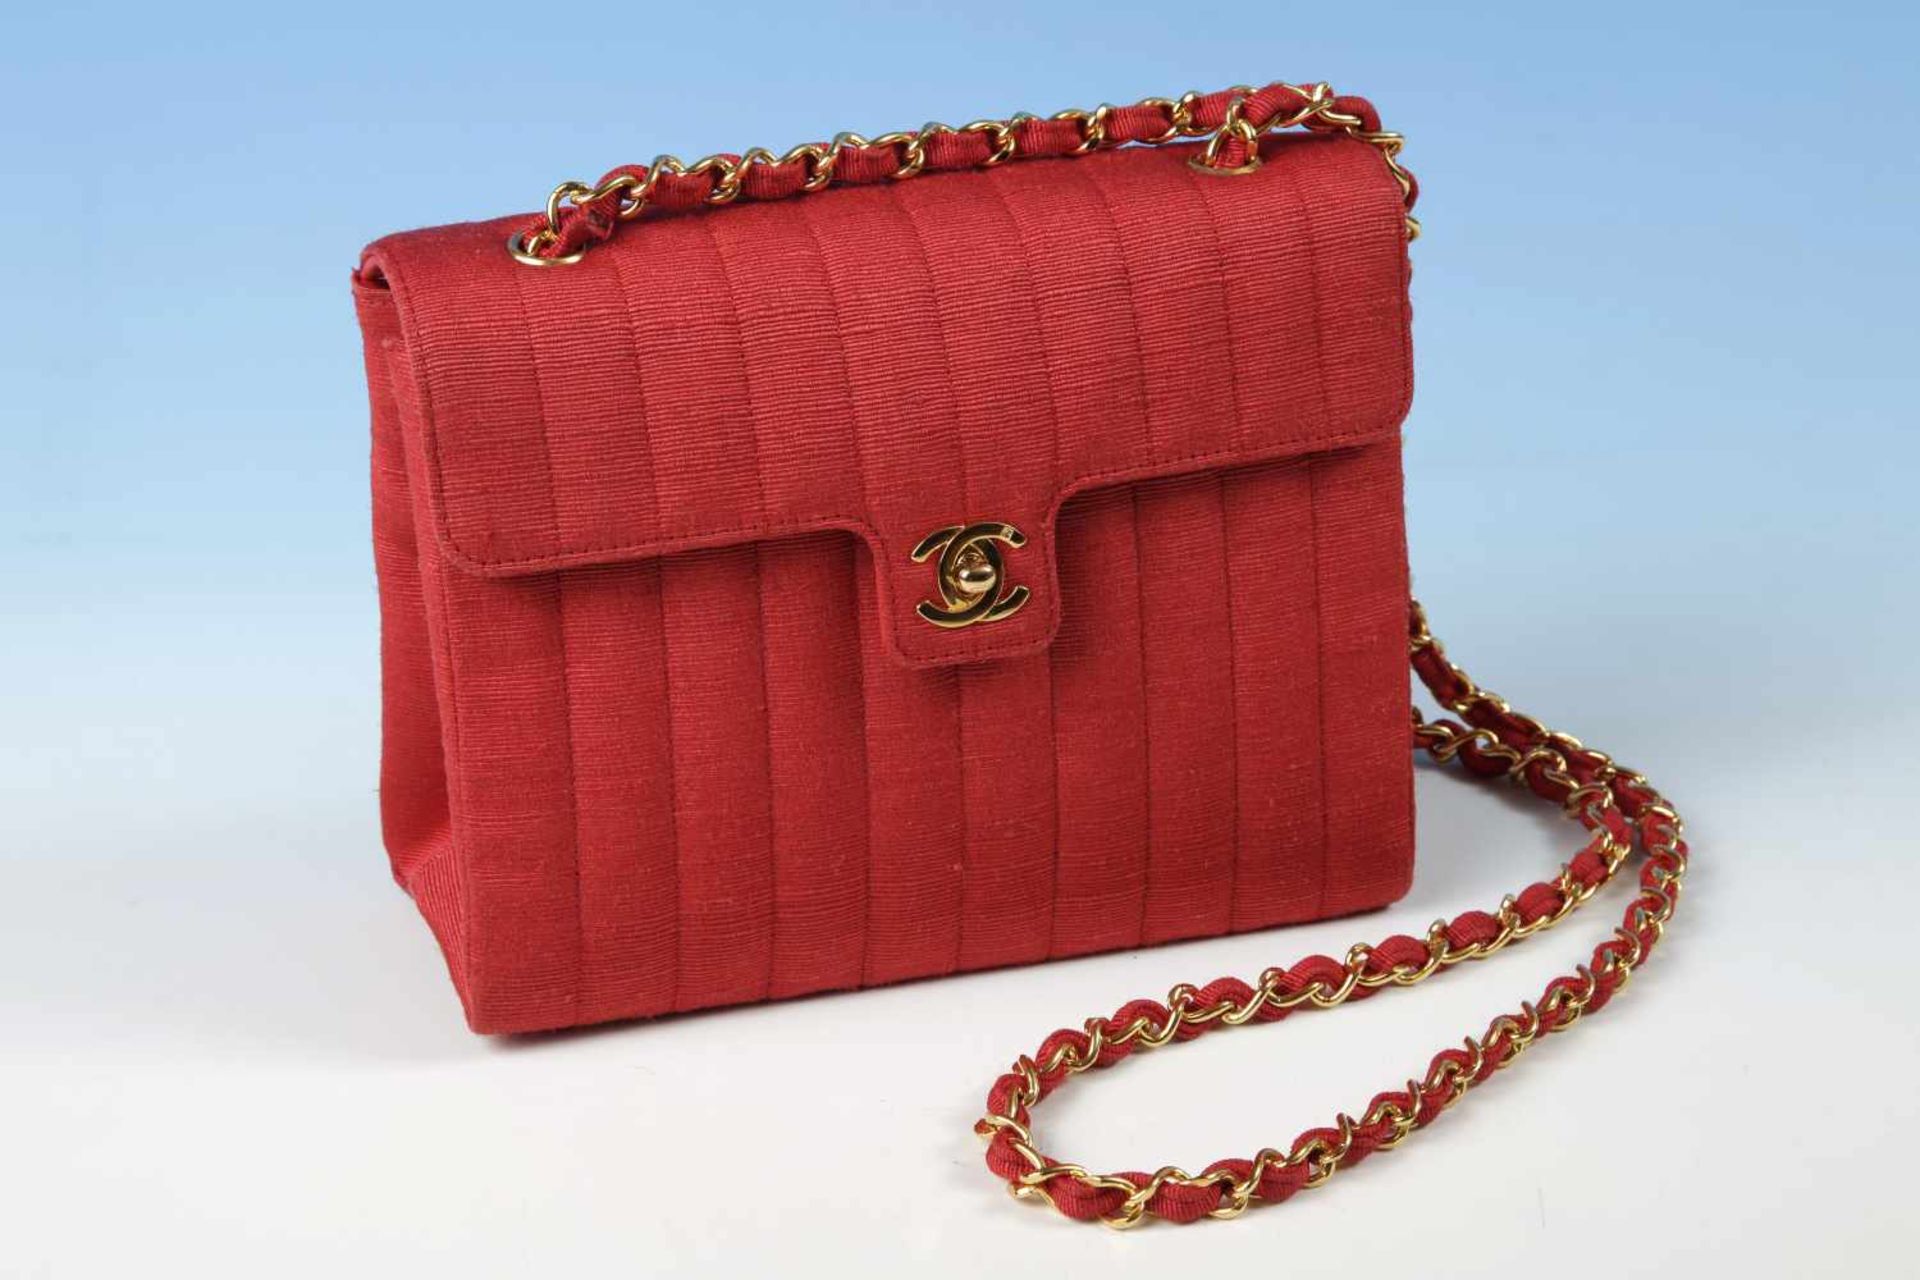 Chanel-Damenhandtaschezum Umhängen, rote Rohseide, 20x16 cm;